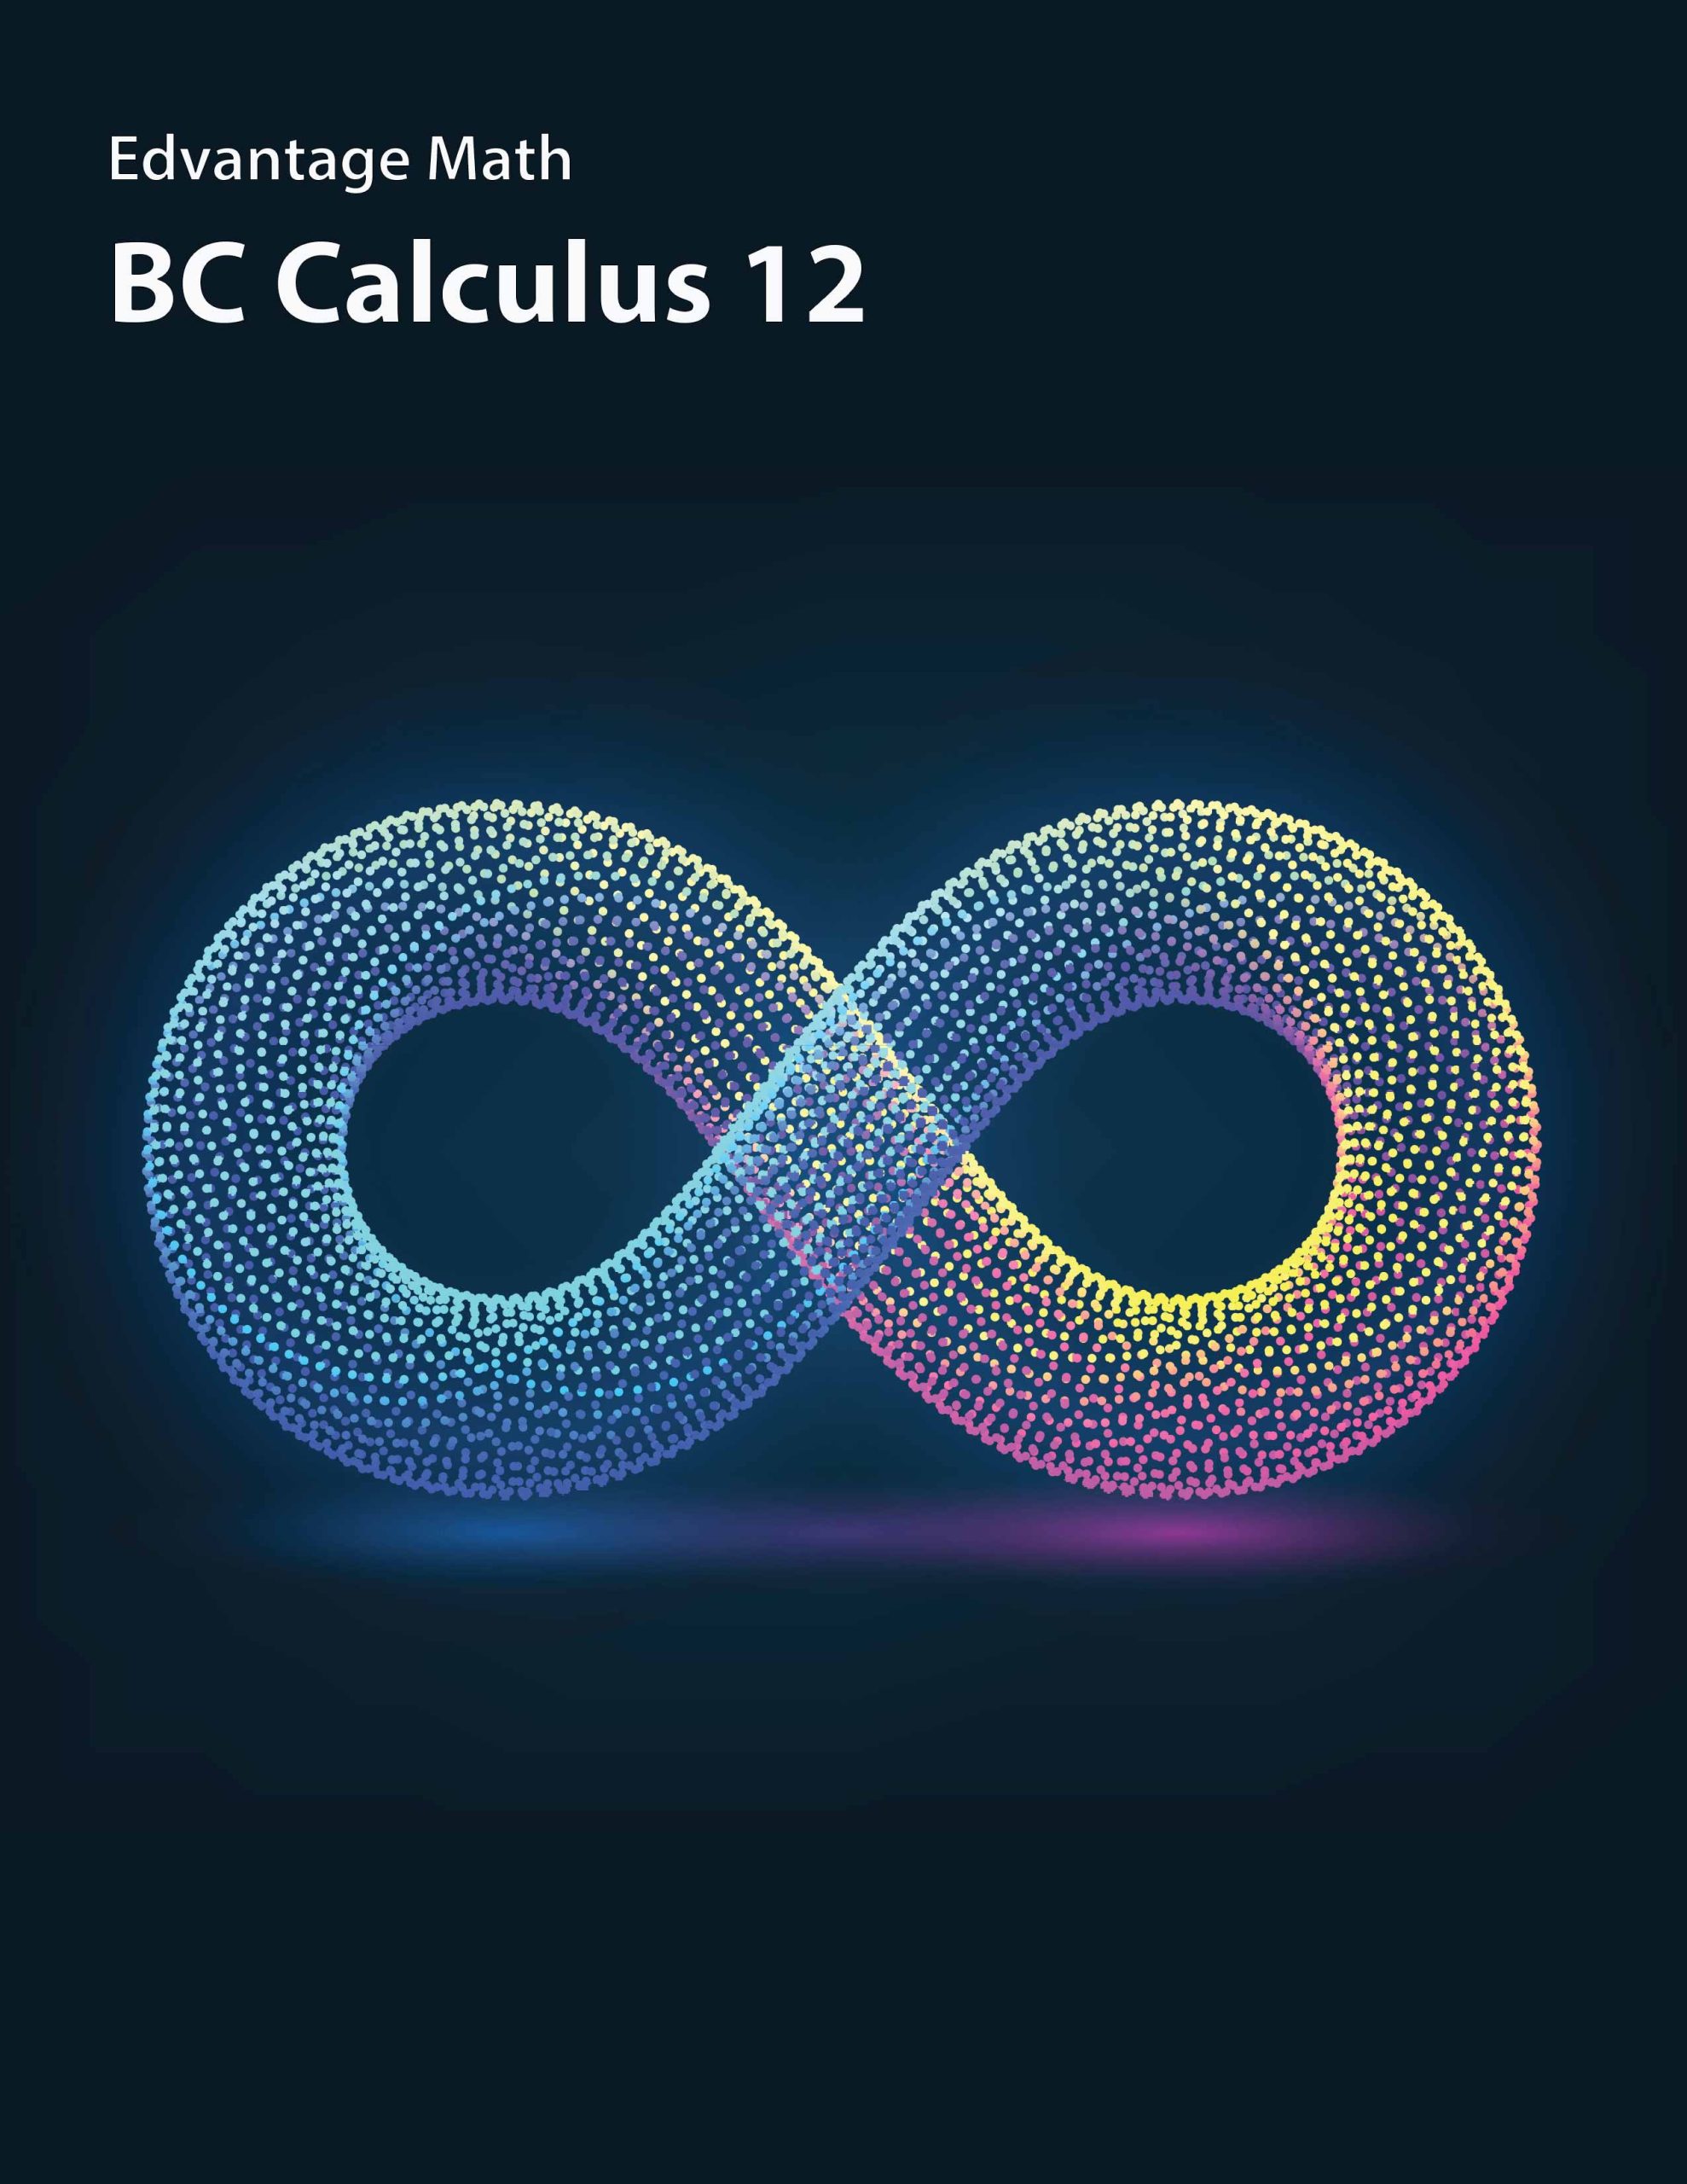 BC Calculus Cover